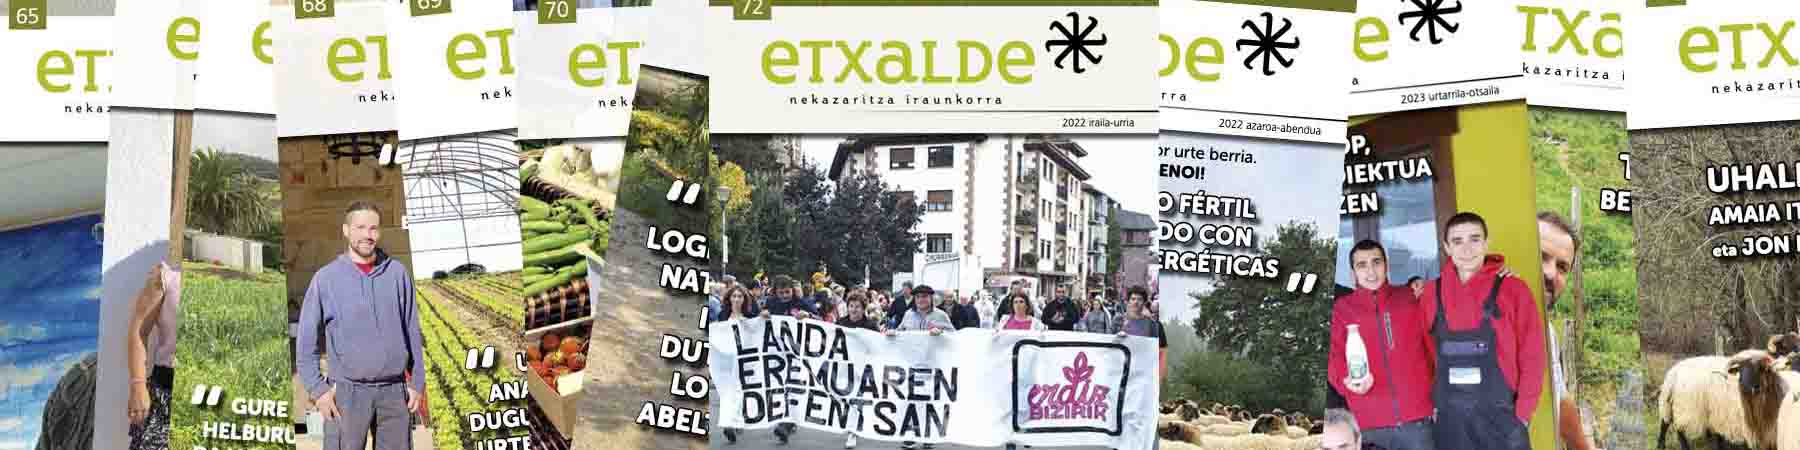 etxalde aldizkaria